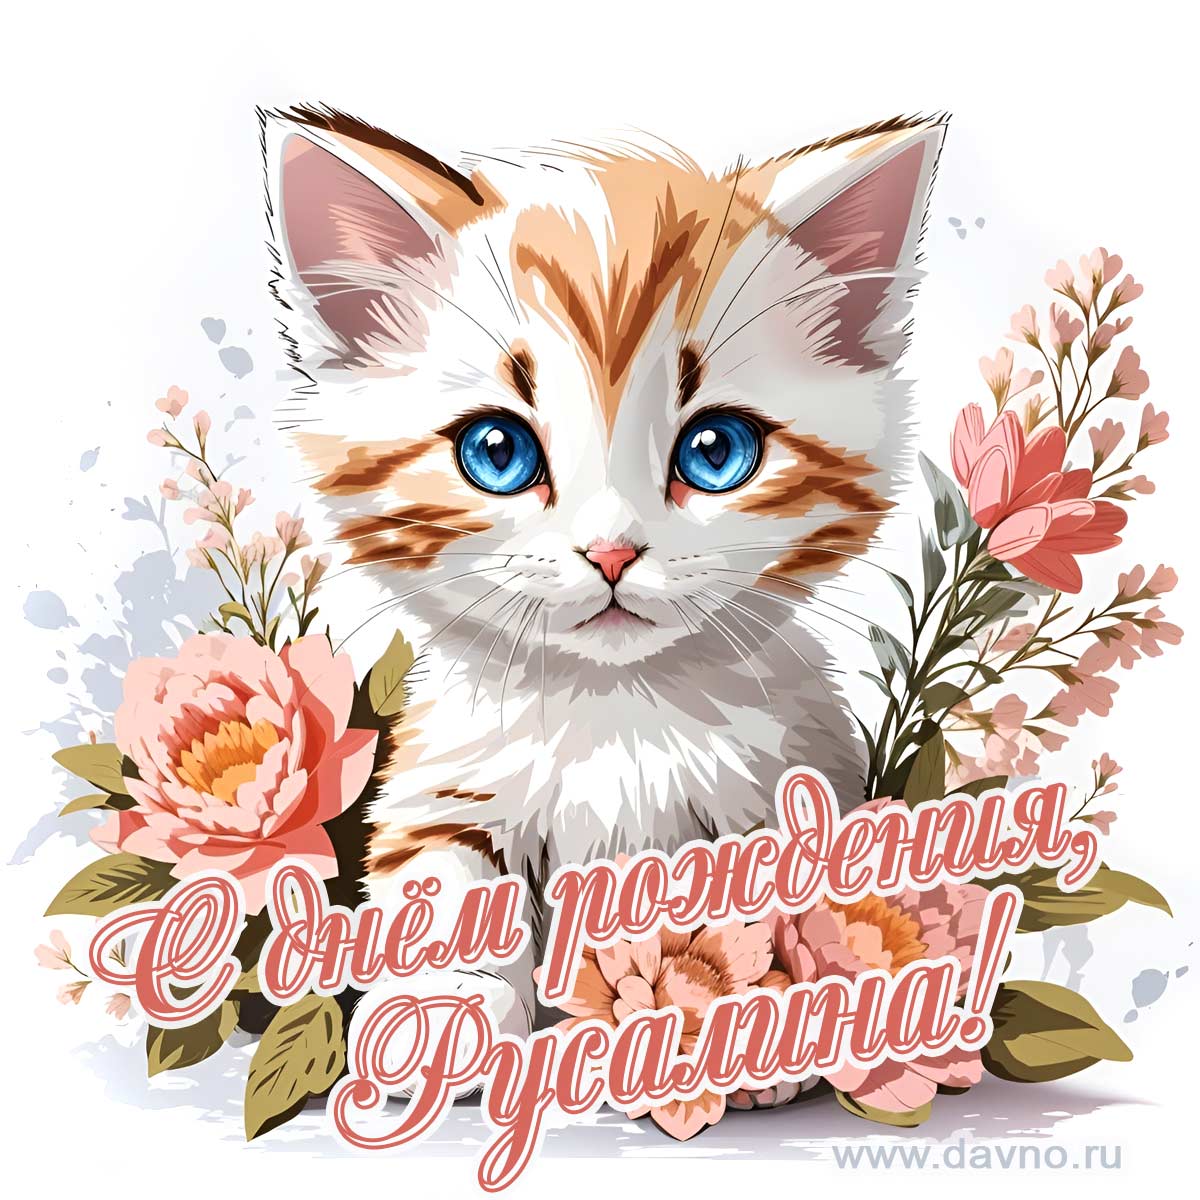 Новая рисованная поздравительная открытка для Русалины с котёнком